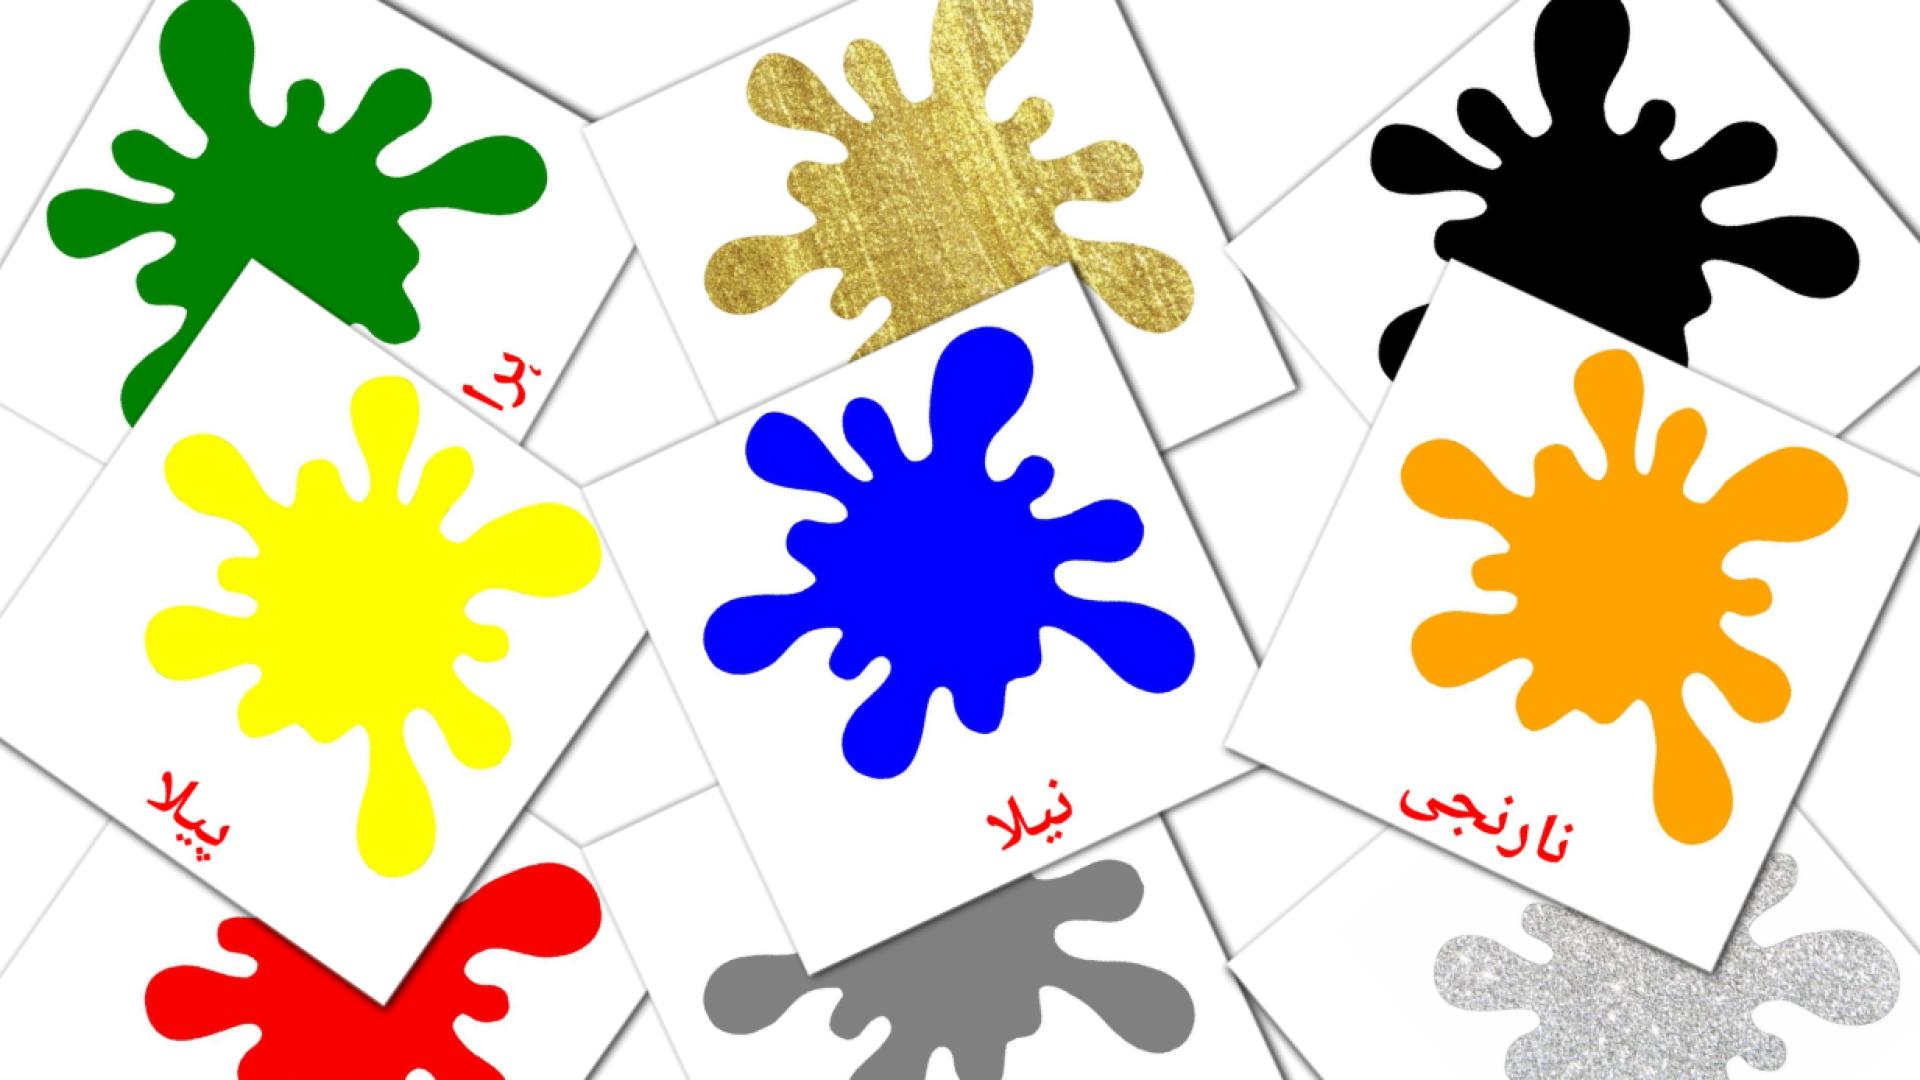 رنگ اور شکلیں۔ urdu vocabulary flashcards